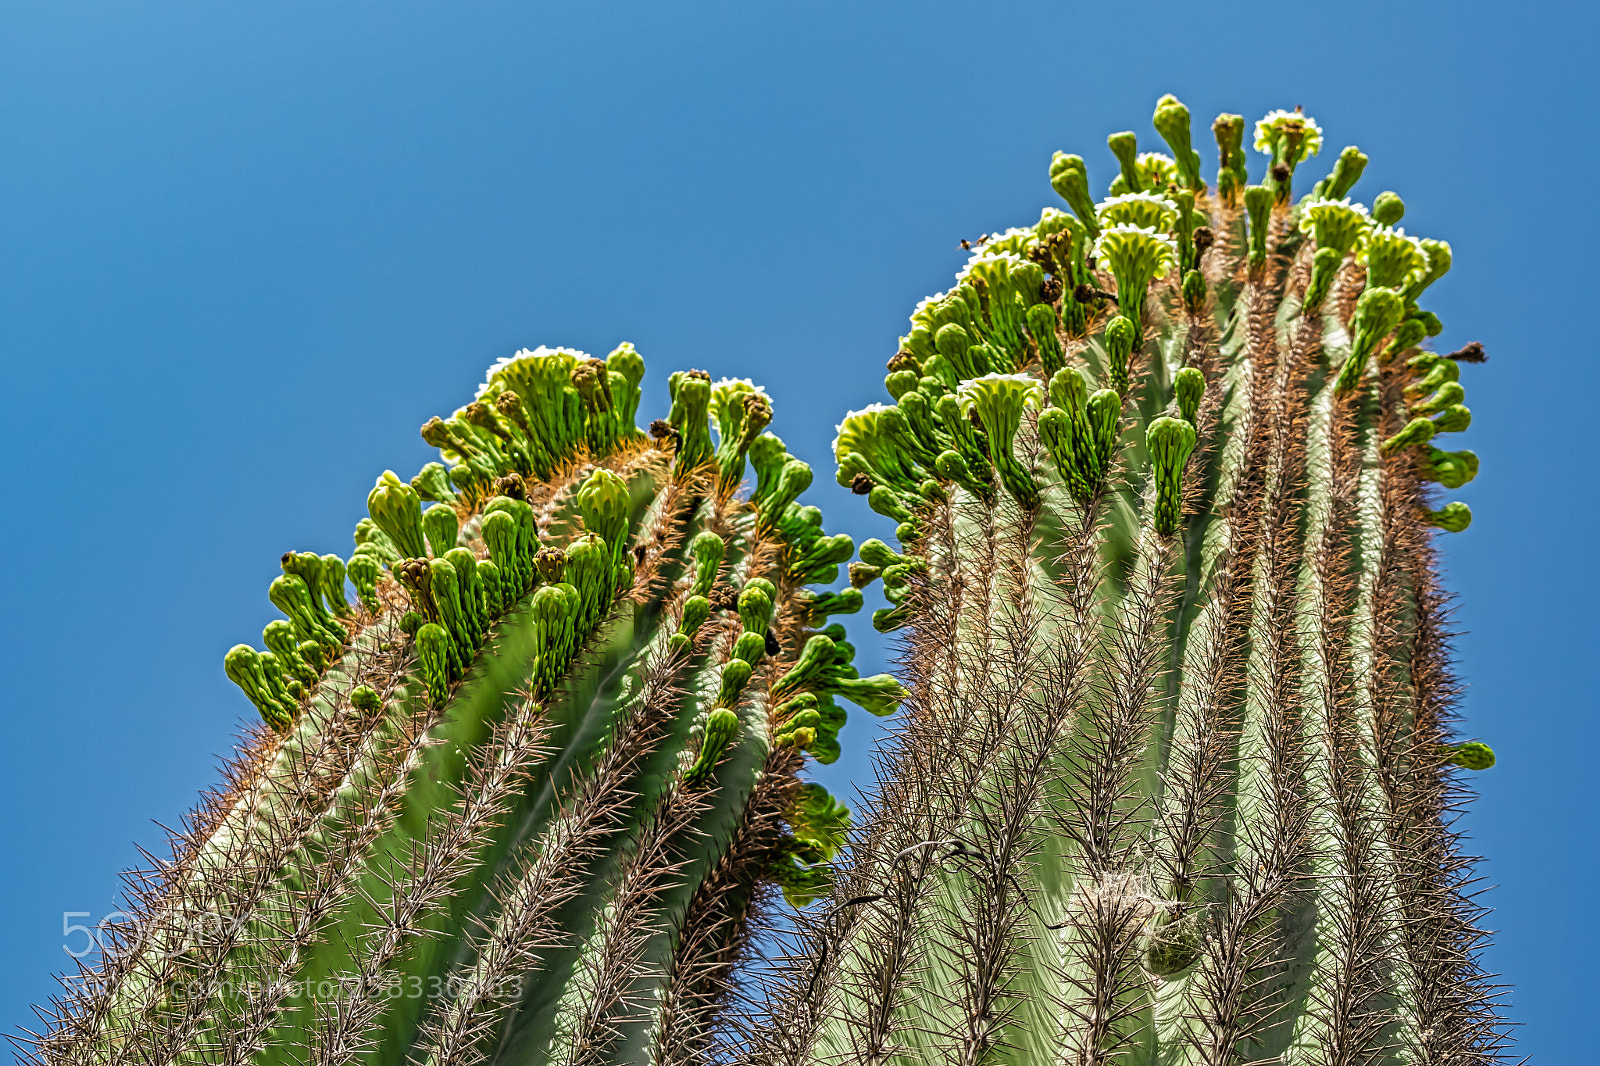 Nikon D5300 sample photo. Spring time saguaro cactus photography